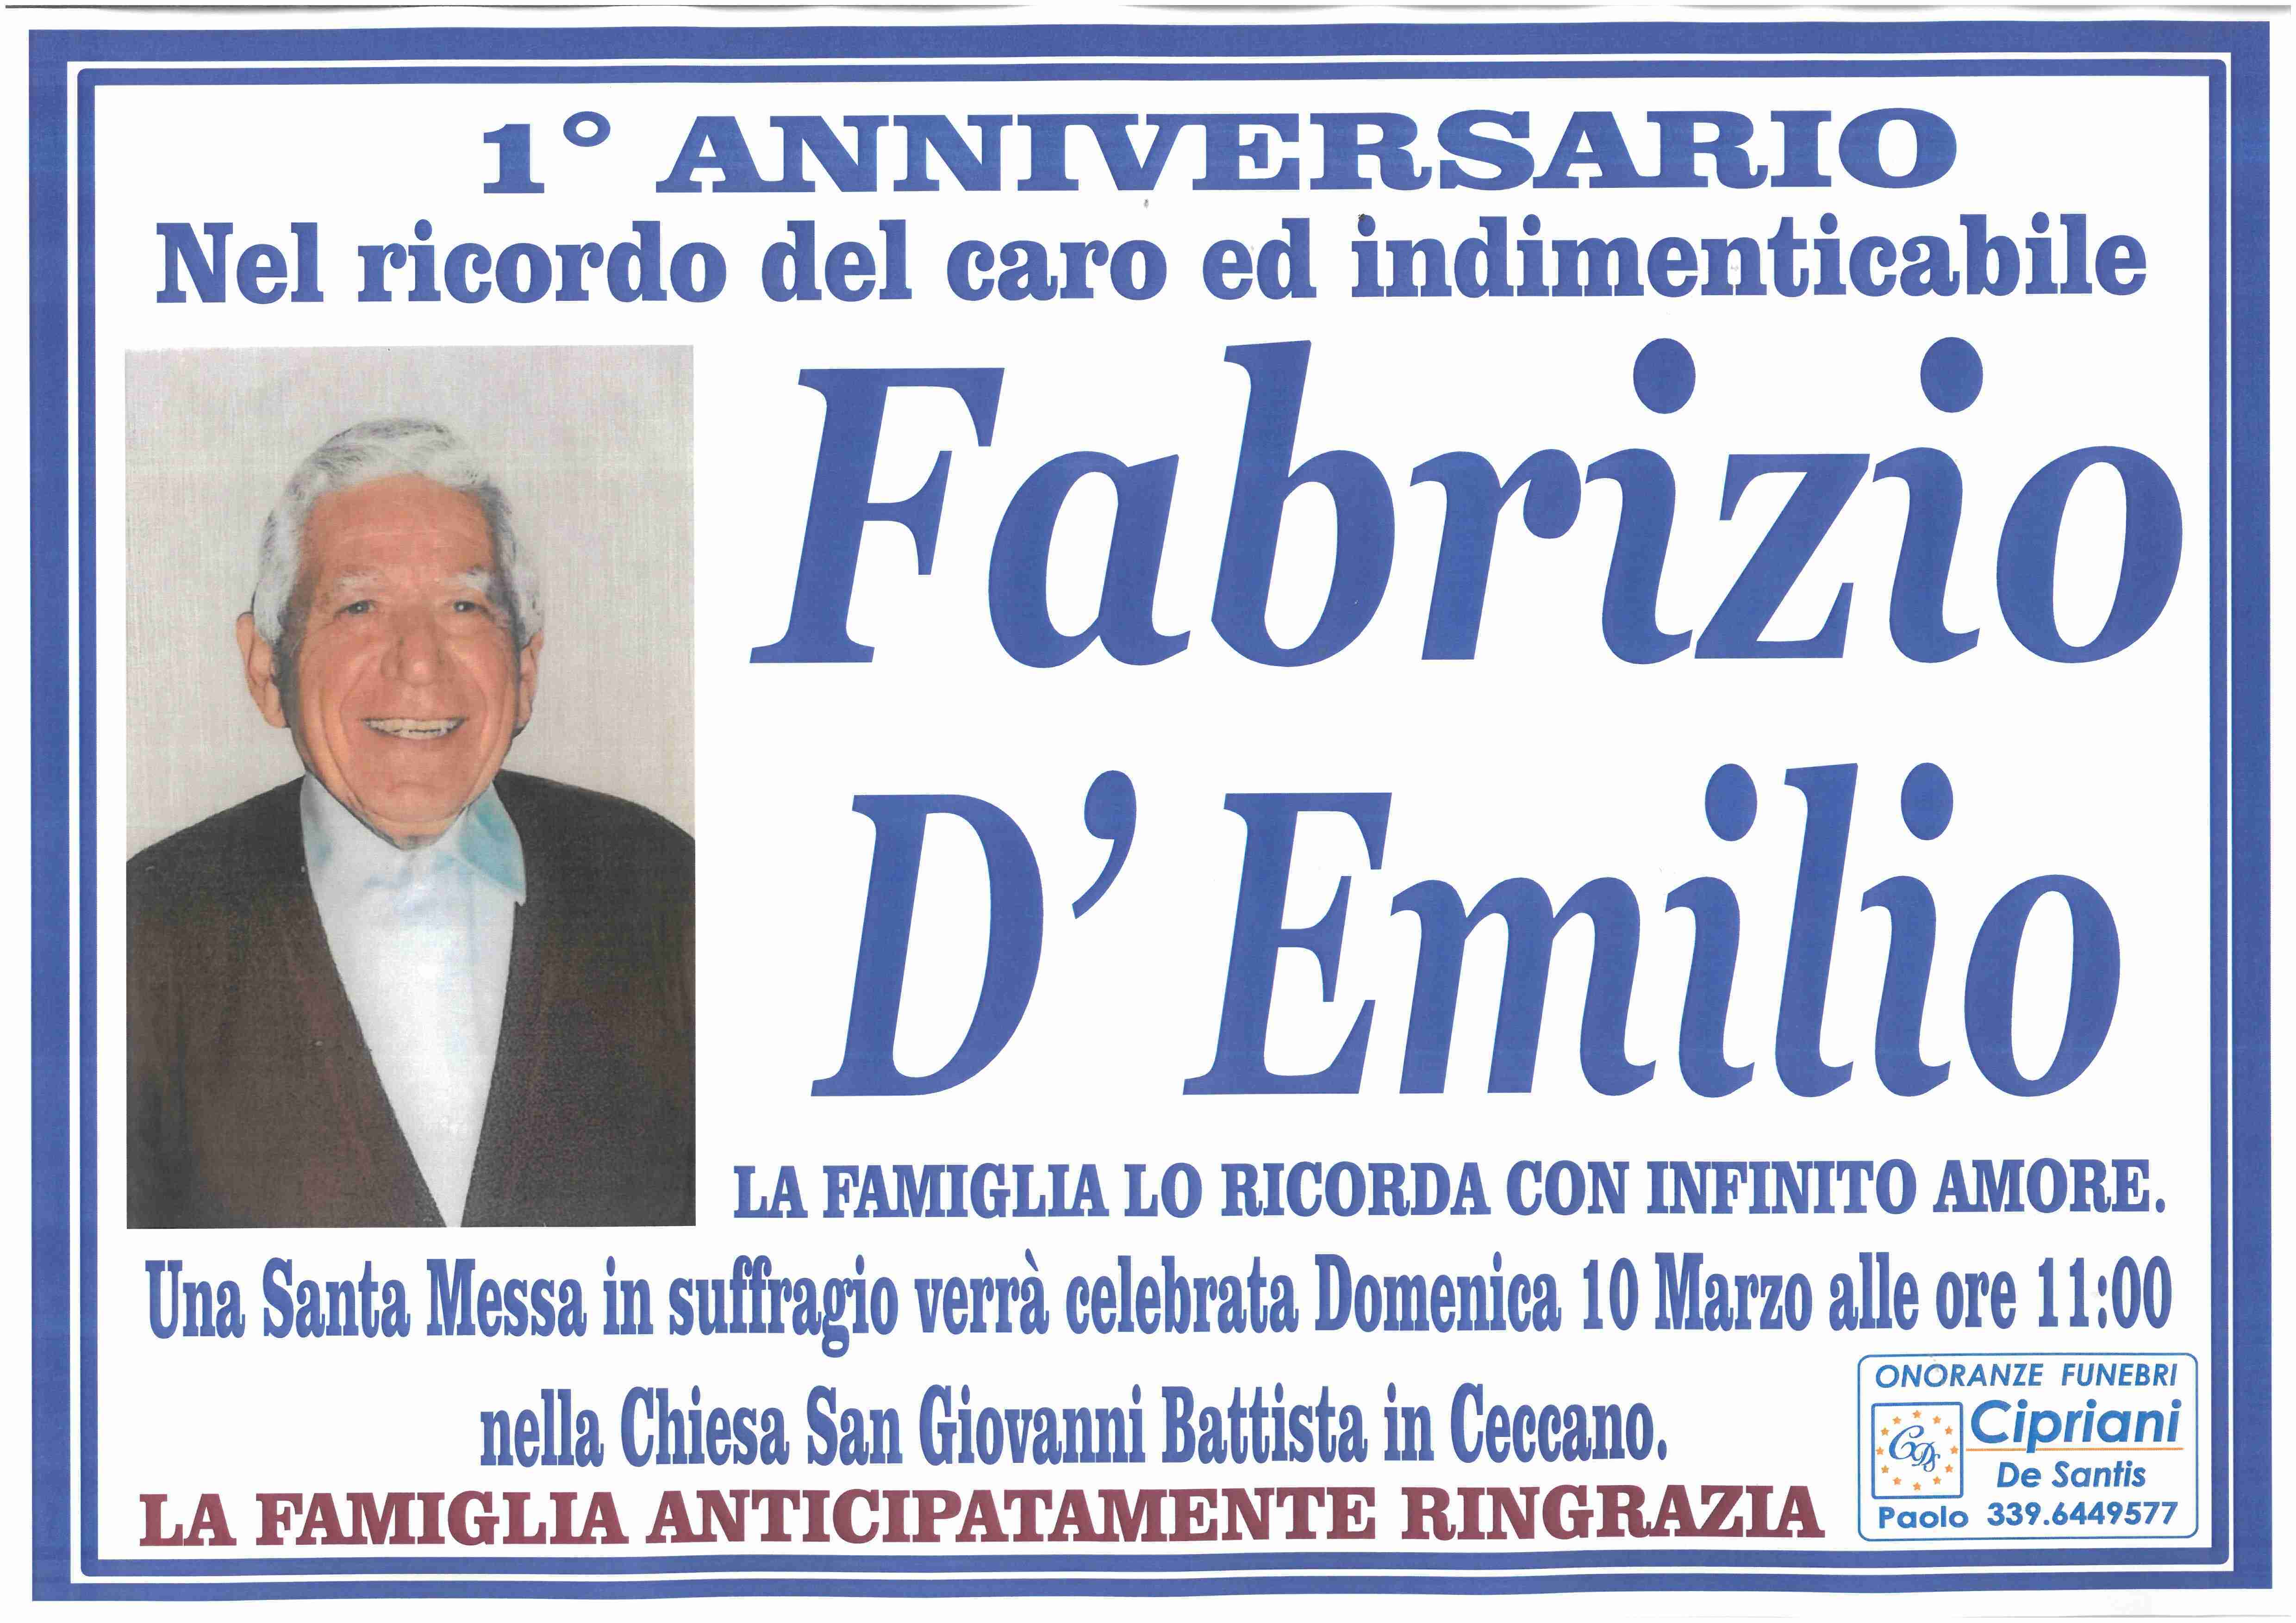 Fabrizio D'Emilio